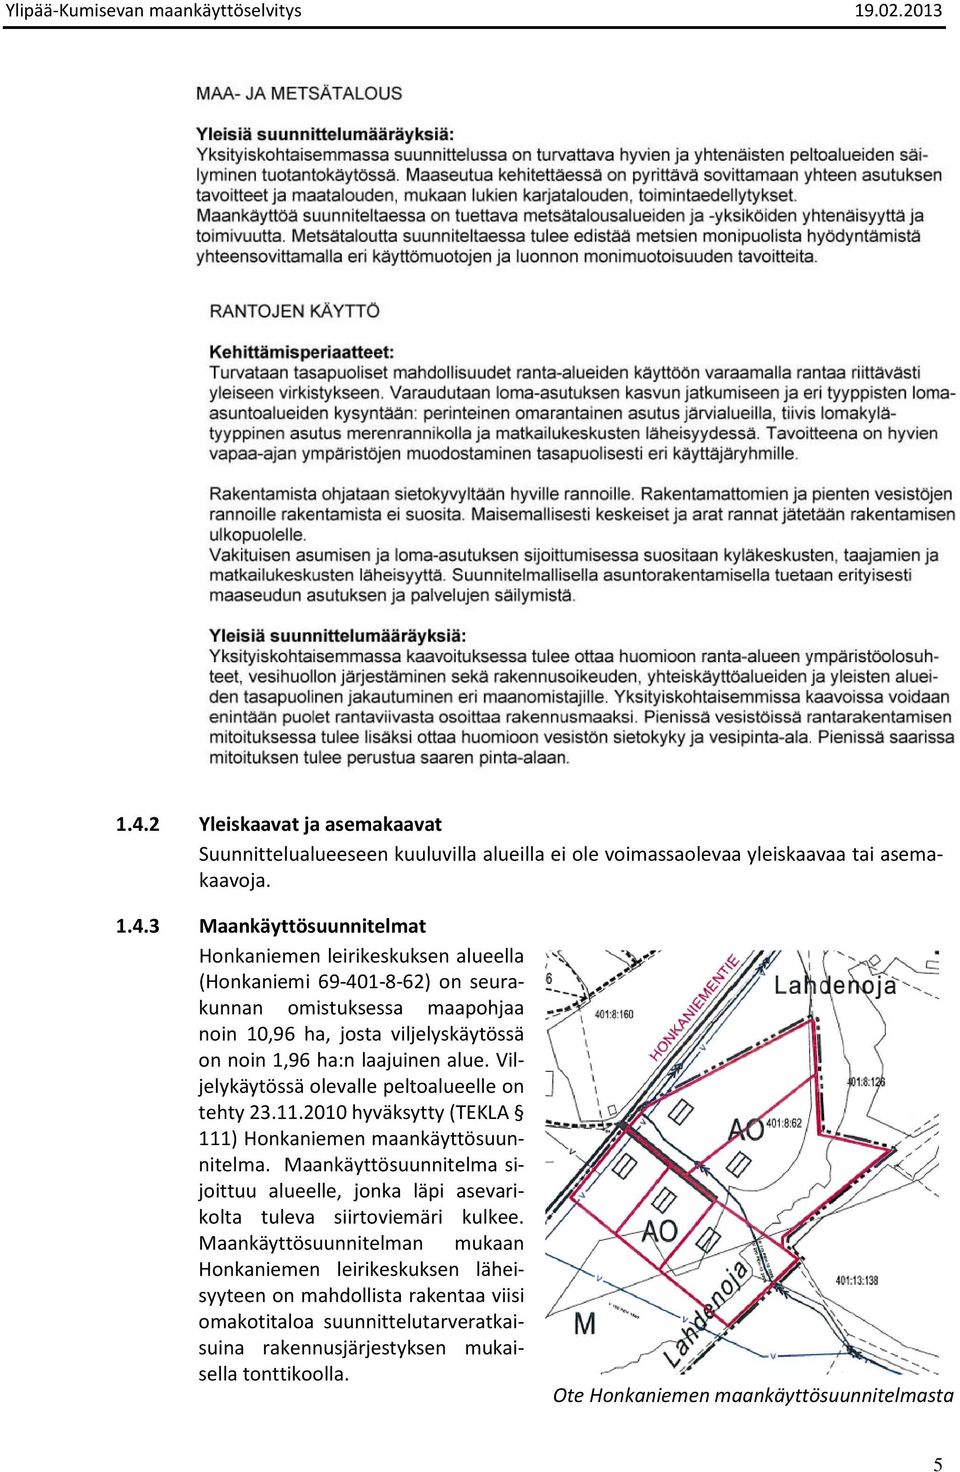 2010 hyväksytty (TEKLA 111) Honkaniemen maankäyttösuunnitelma. Maankäyttösuunnitelma sijoittuu alueelle, jonka läpi asevarikolta tuleva siirtoviemäri kulkee.